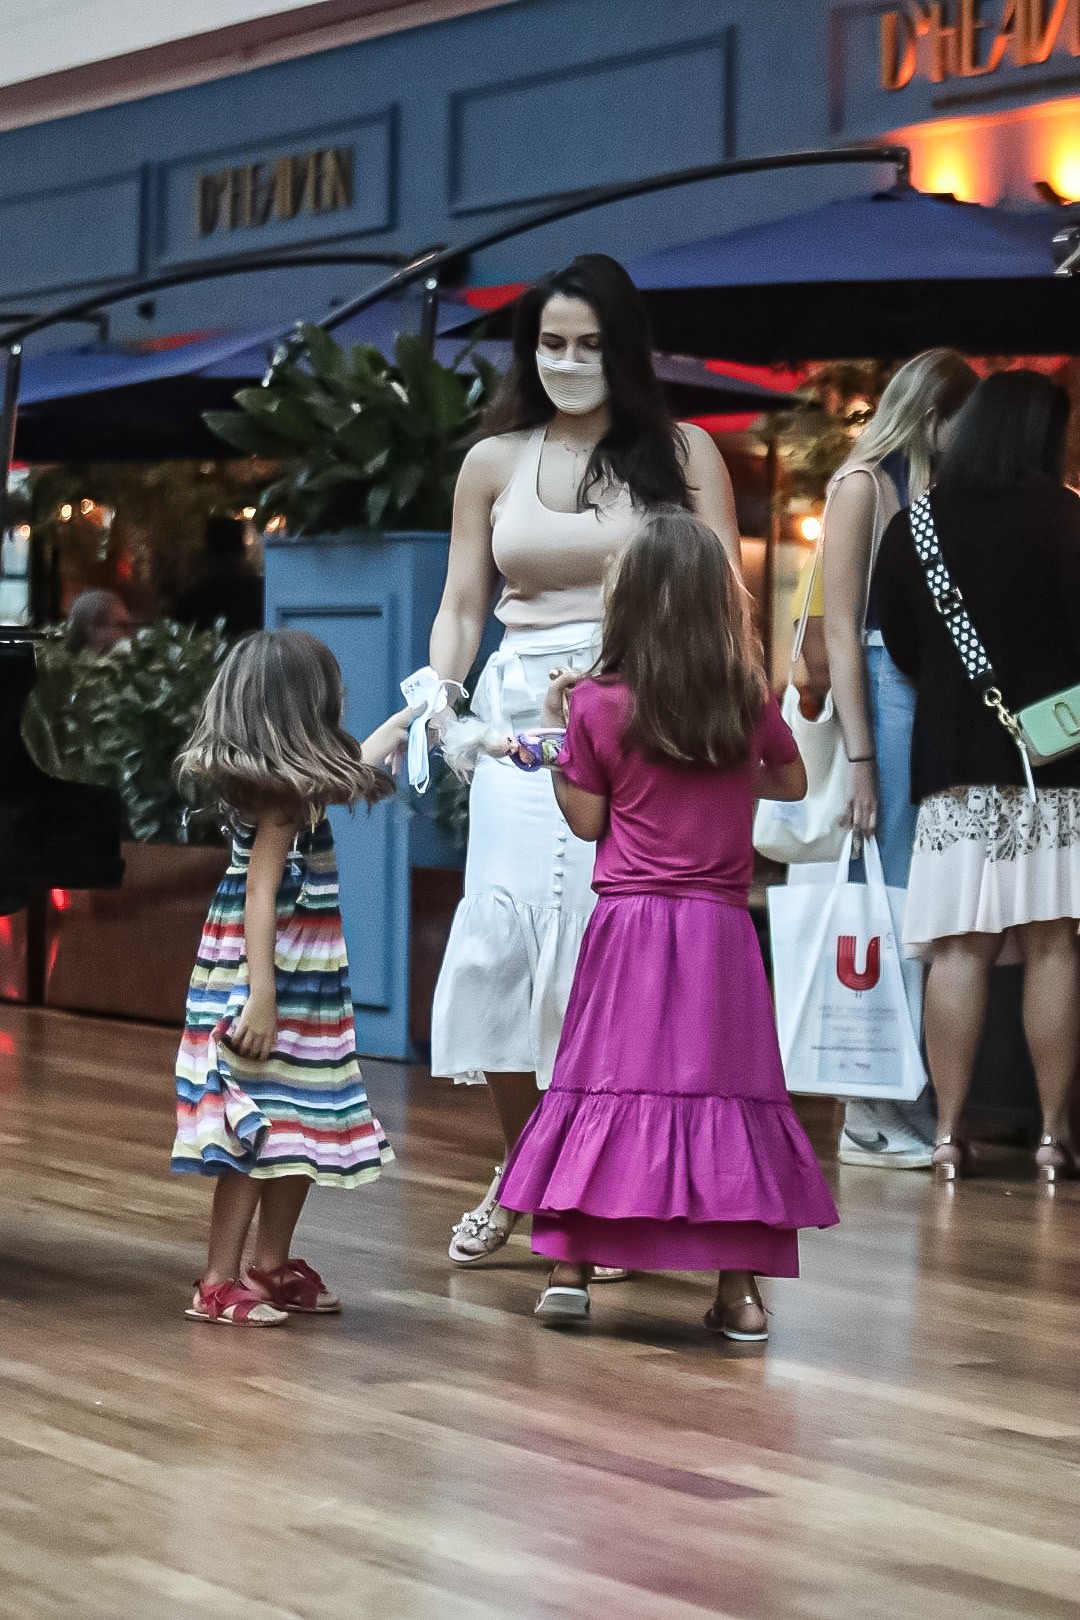 Malvino Salvador passeia com a família em shopping no Rio (Foto: AgNews)